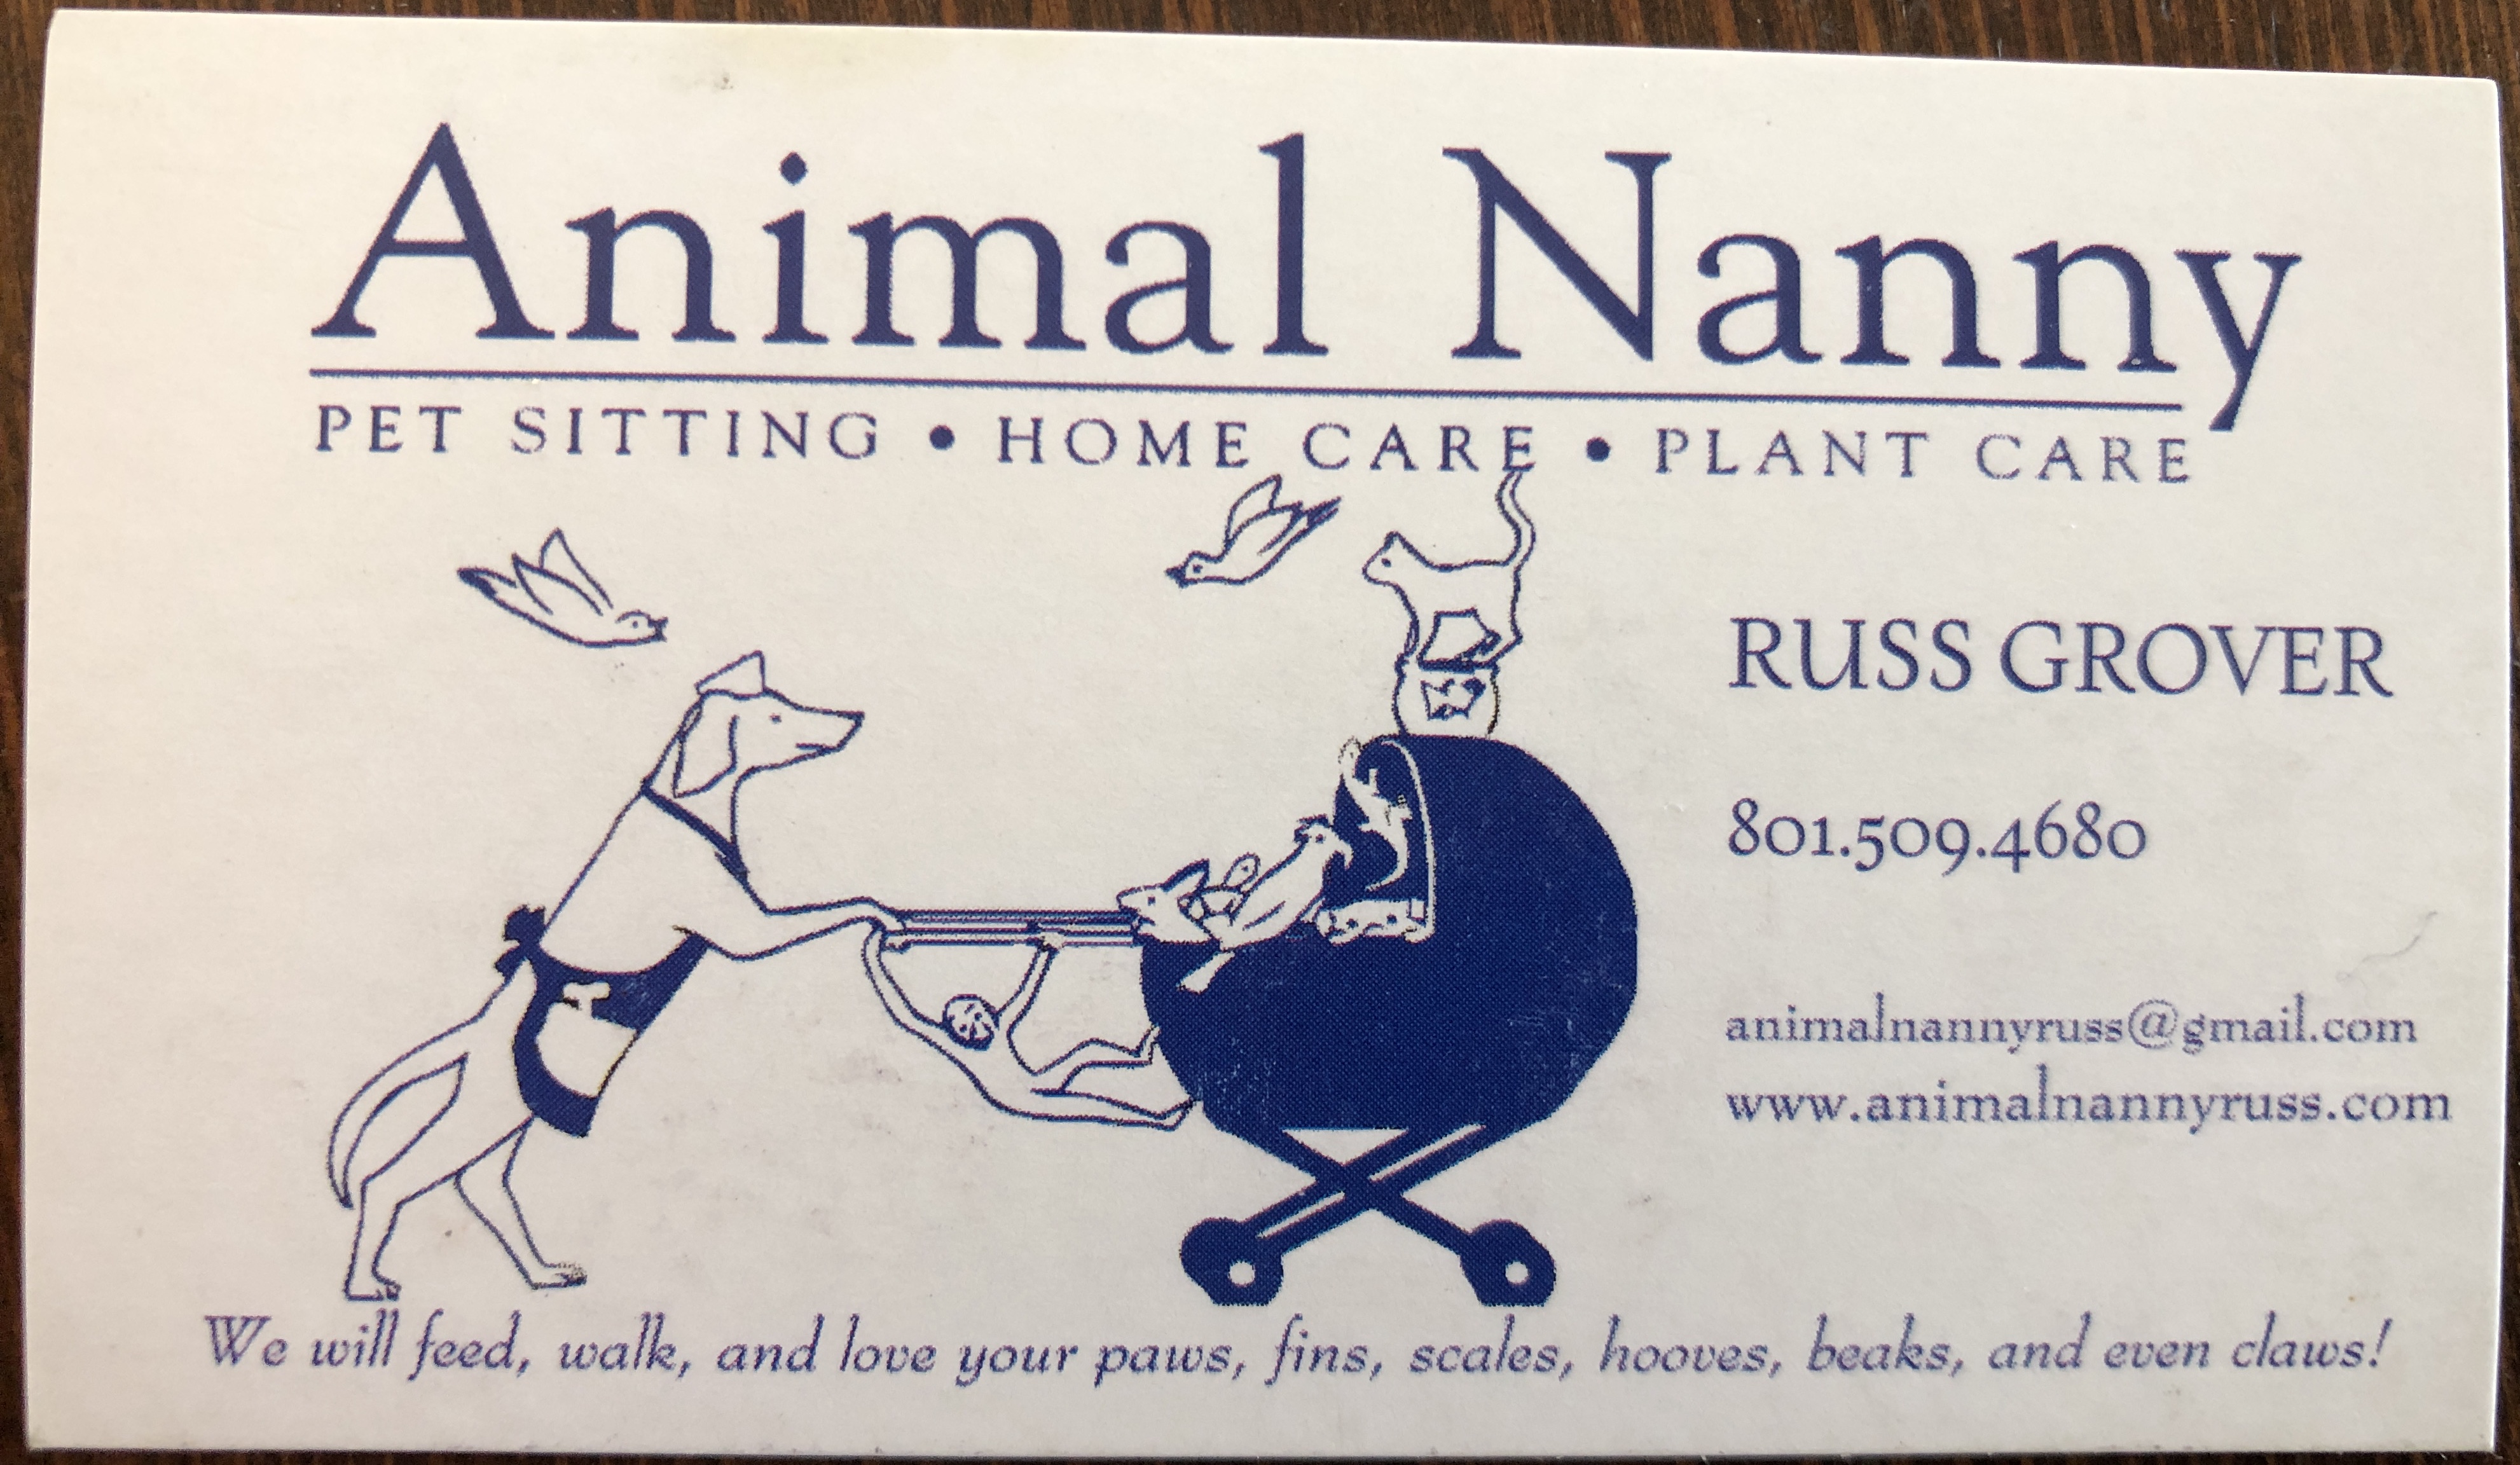 Animal Nanny